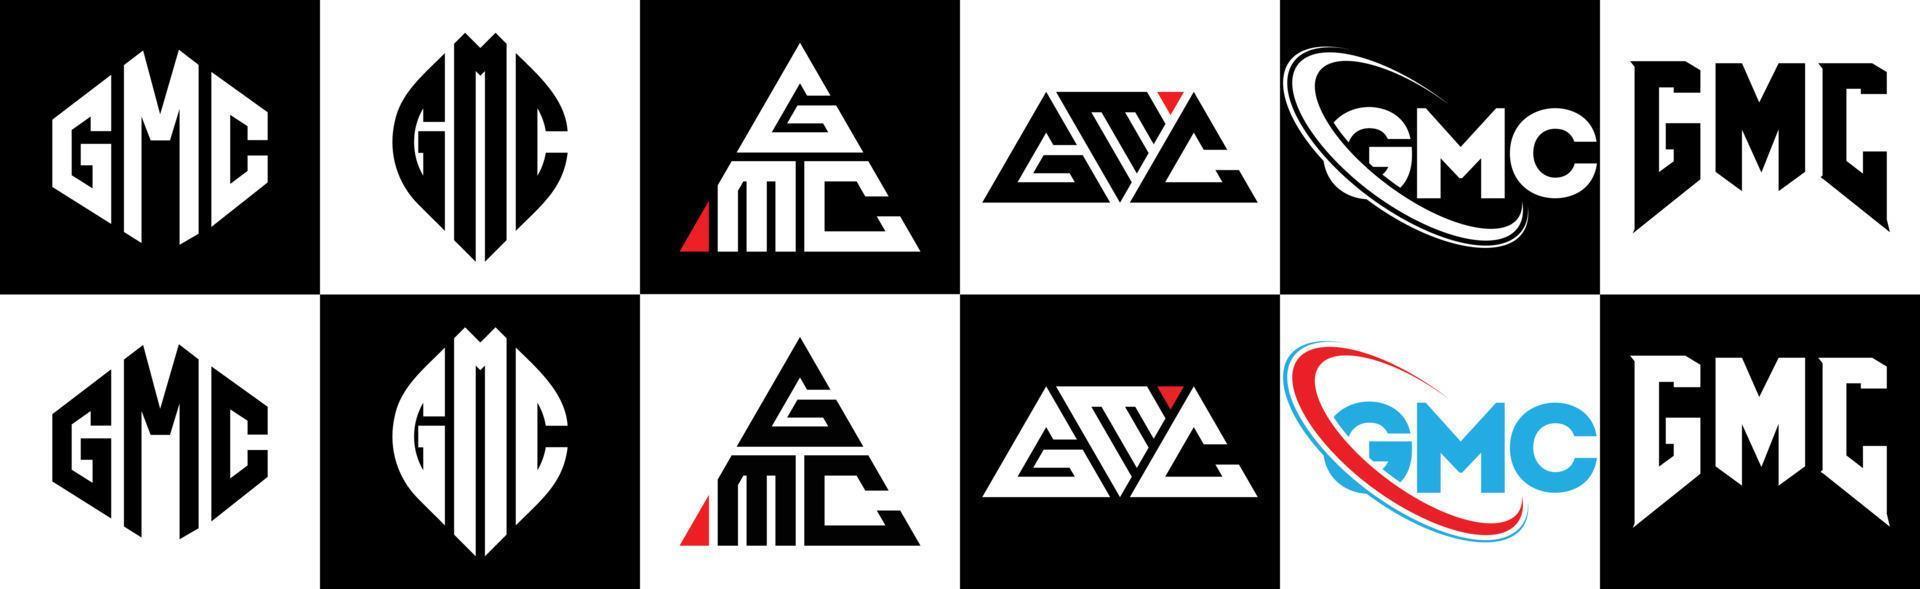 création de logo de lettre gmc en six styles. gmc polygone, cercle, triangle, hexagone, style plat et simple avec logo de lettre de variation de couleur noir et blanc dans un plan de travail. logo gmc minimaliste et classique vecteur